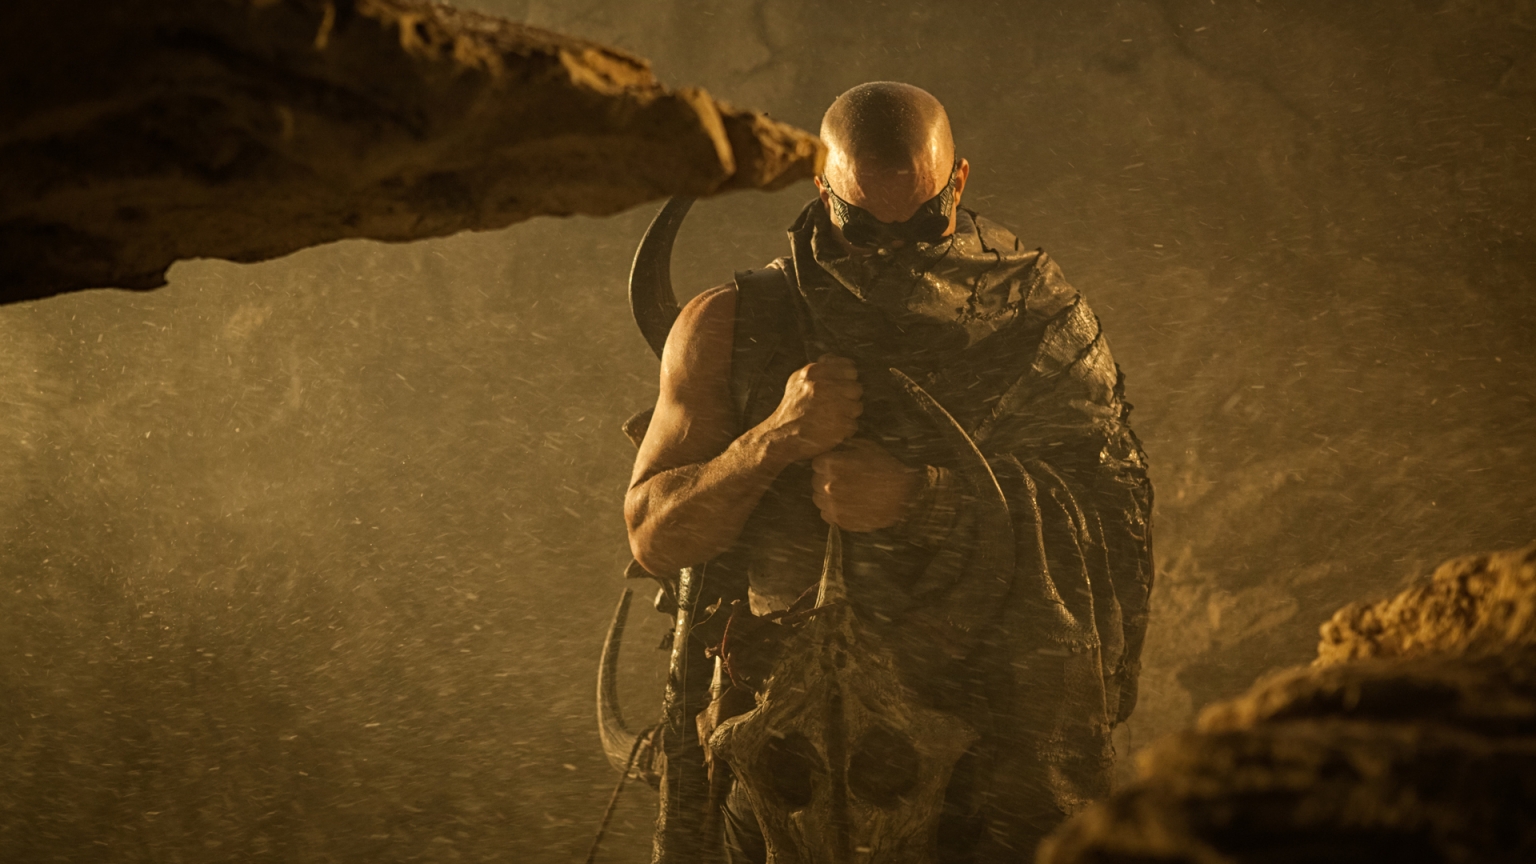 Vin Diesel Riddick 2013 for 1536 x 864 HDTV resolution